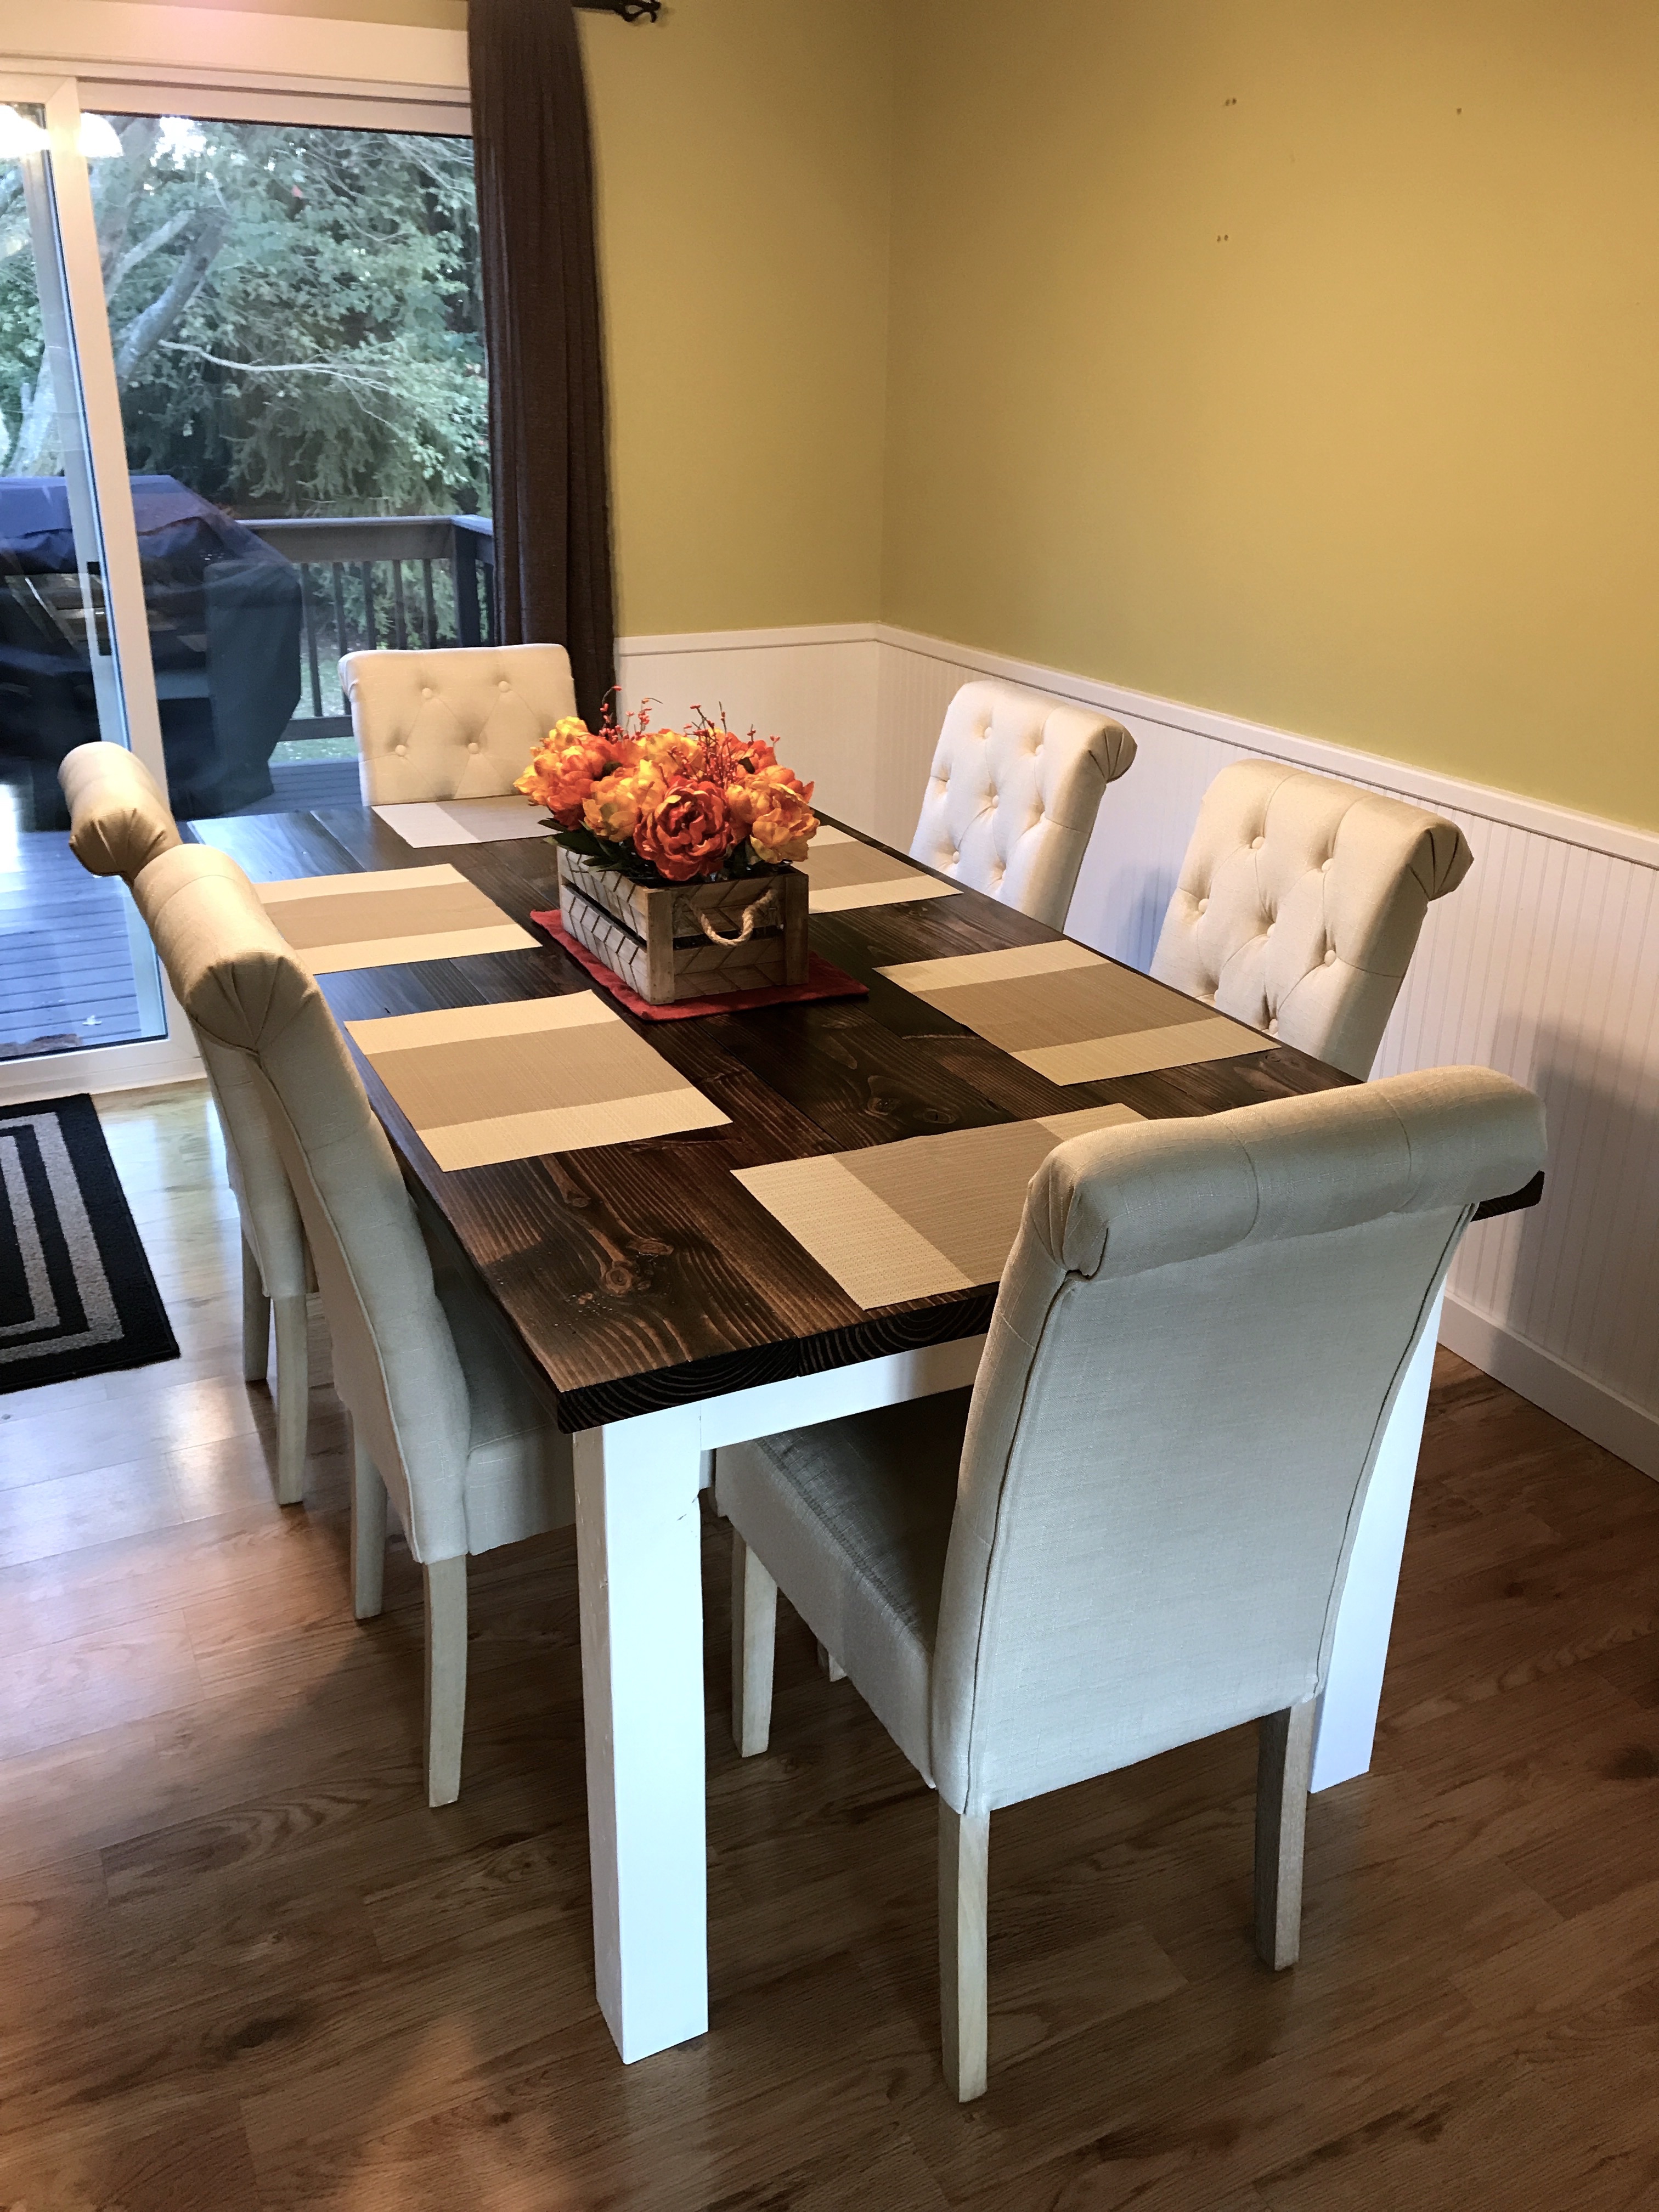 Finally… A Farmhouse Dining Table